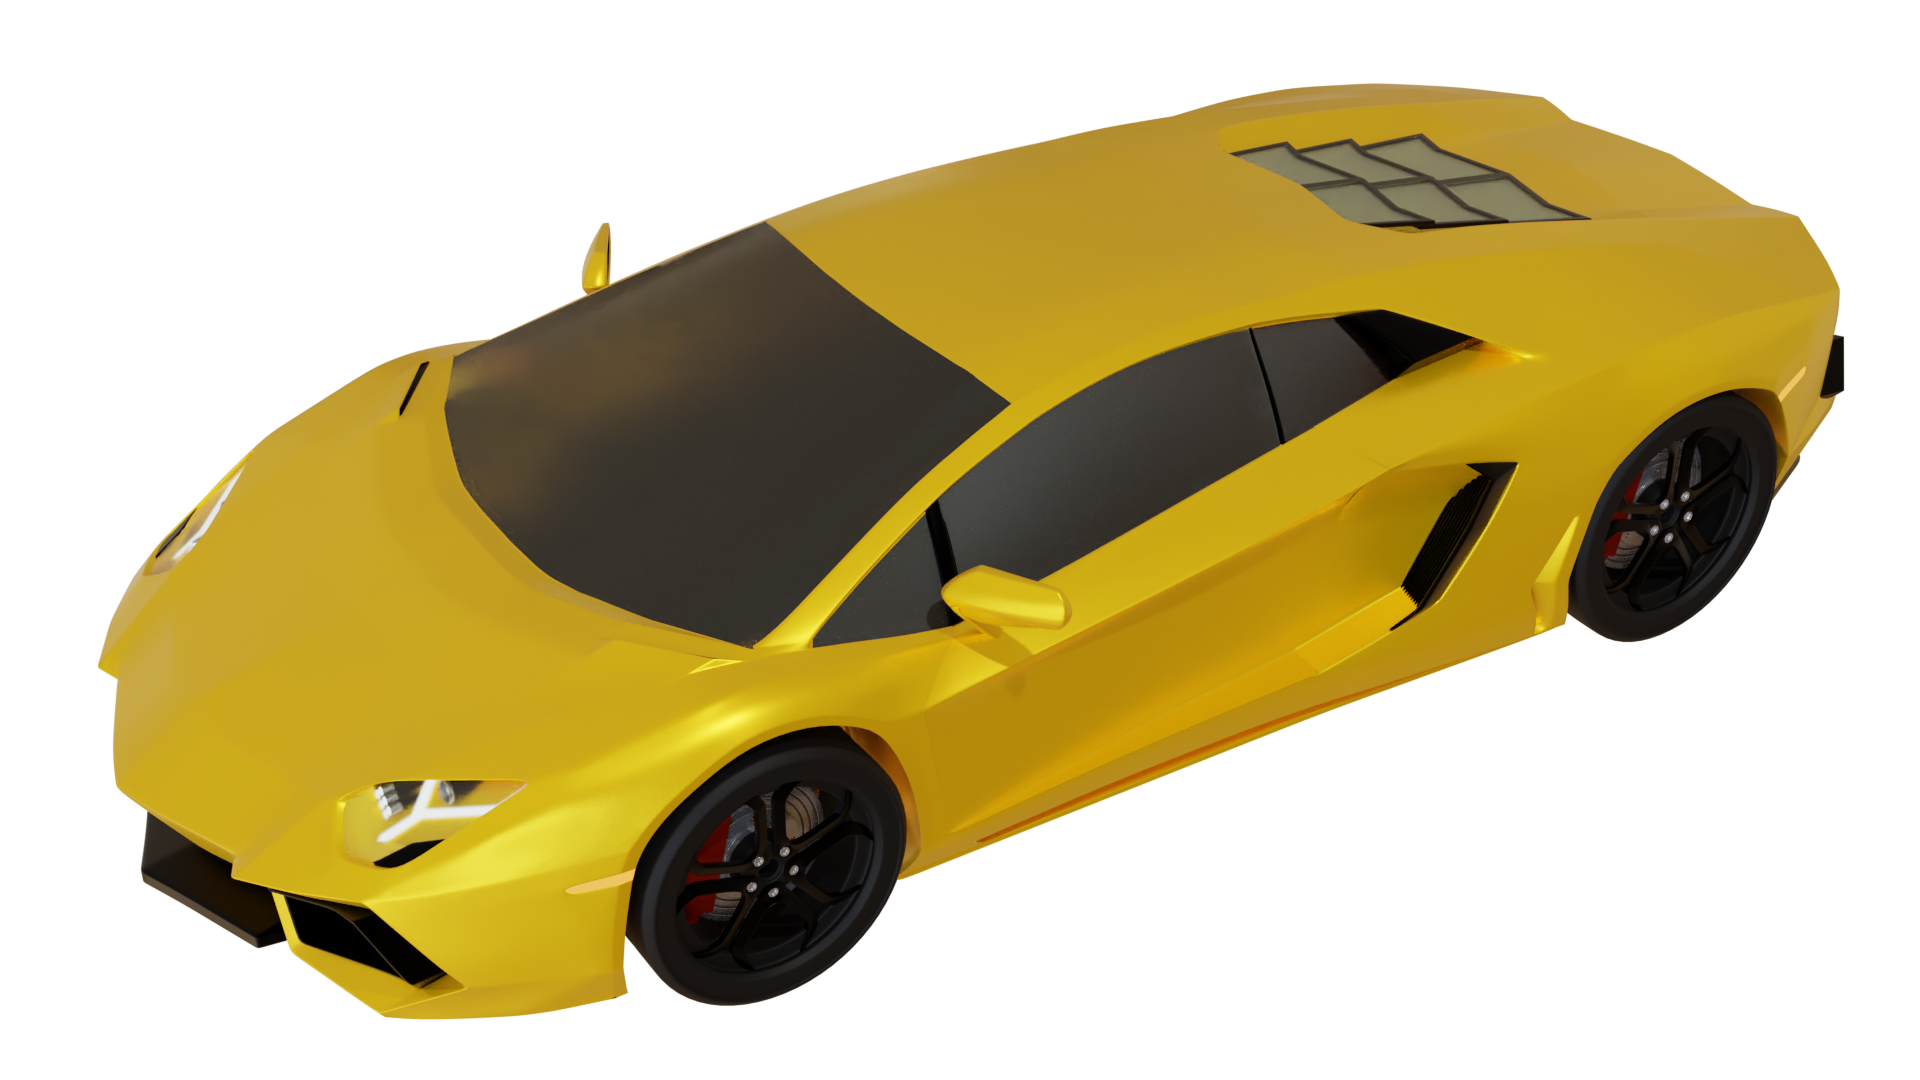 Lamborghini 2.0 preview image 1